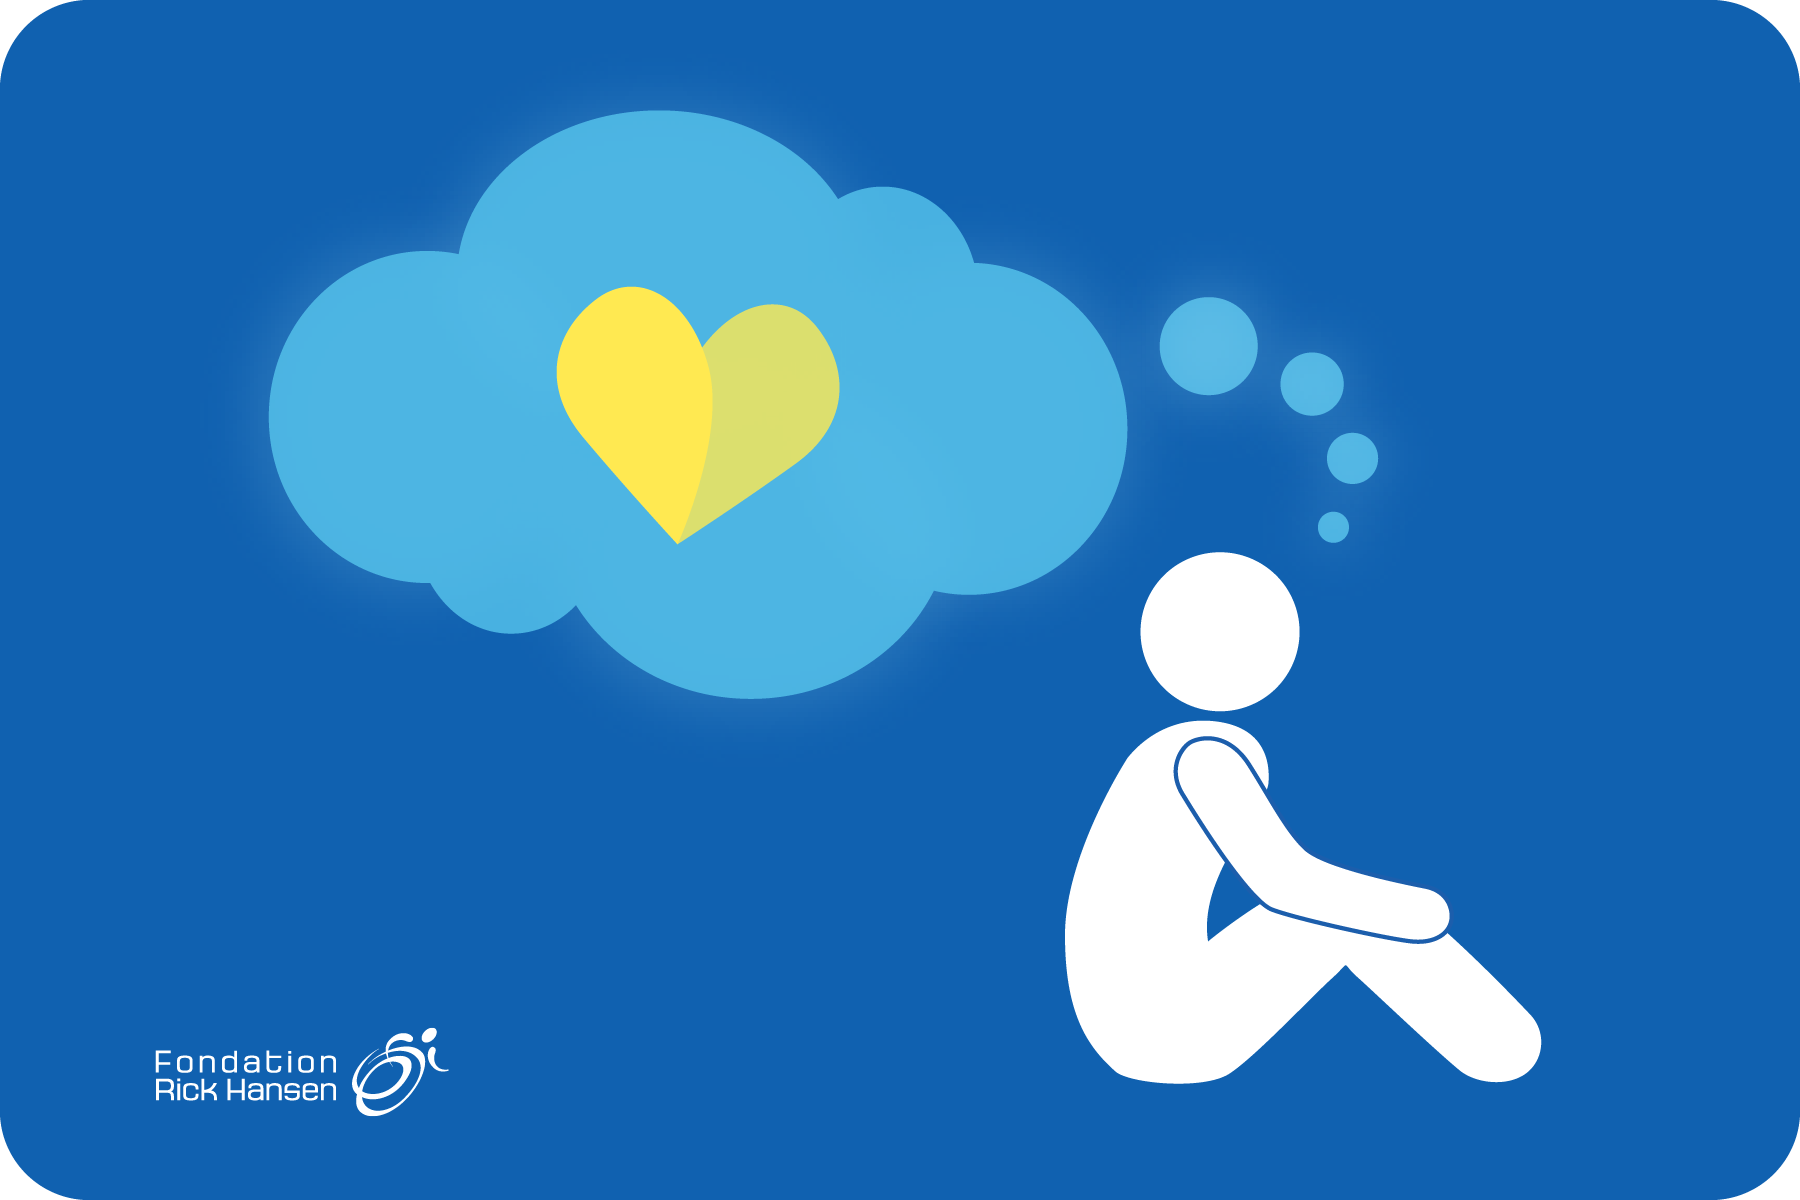 Image blanche d’une personne assise sur un fond bleu. Il y a une bulle de réflexion bleu pâle avec un cœur jaune à l’intérieur. Le logo de la Fondation Rick Hansen se trouve dans le coin inférieur gauche.